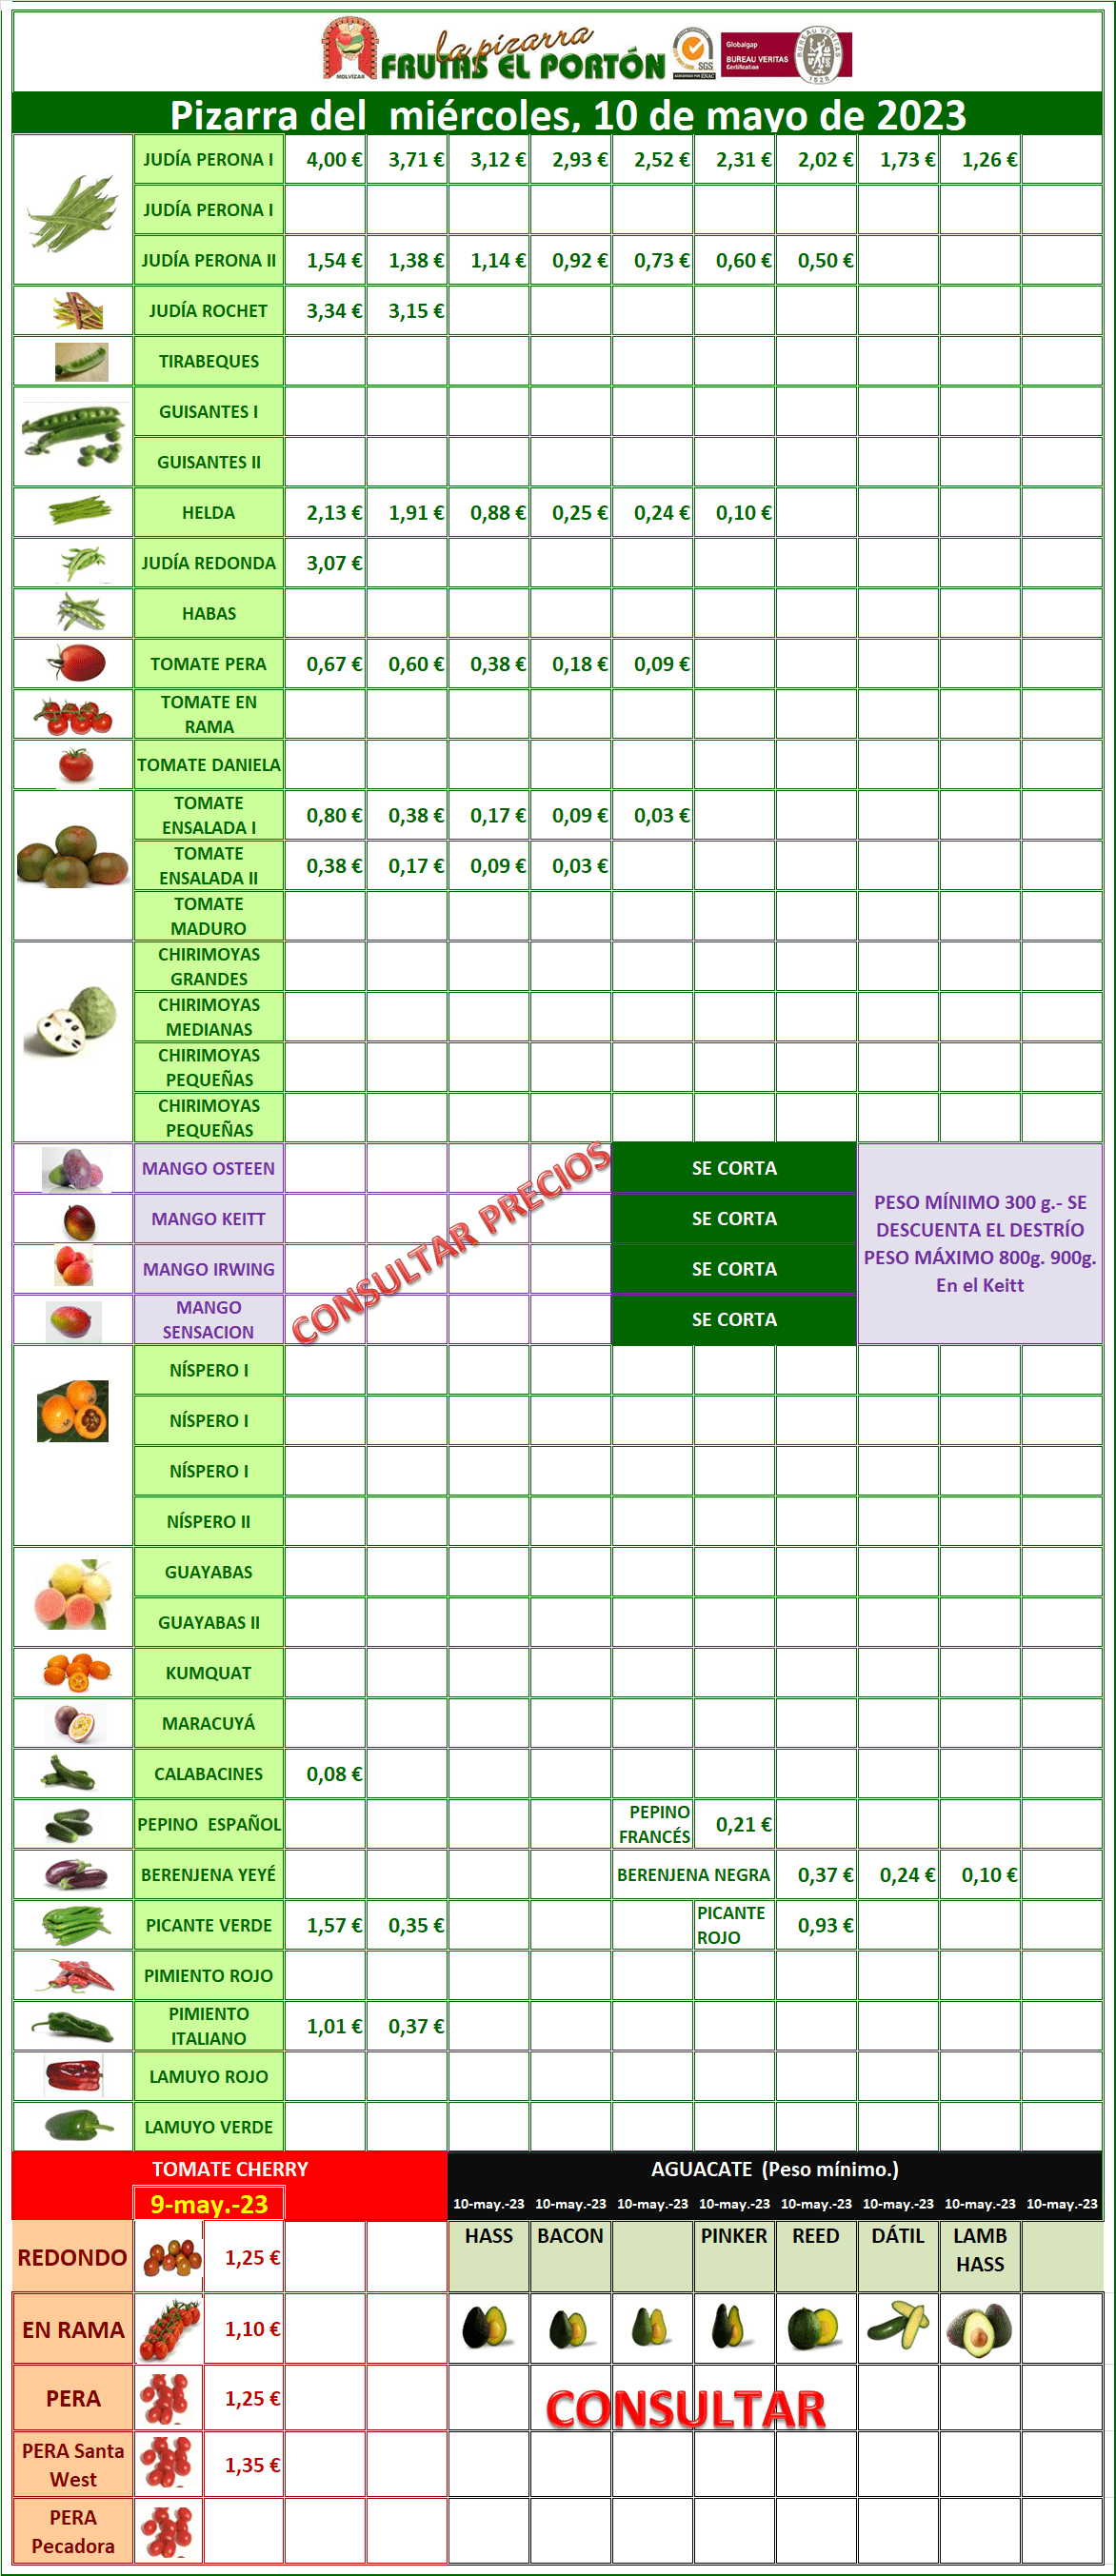 Subasta hortofrutícola Frutas El Portón  10 de mayo 2023